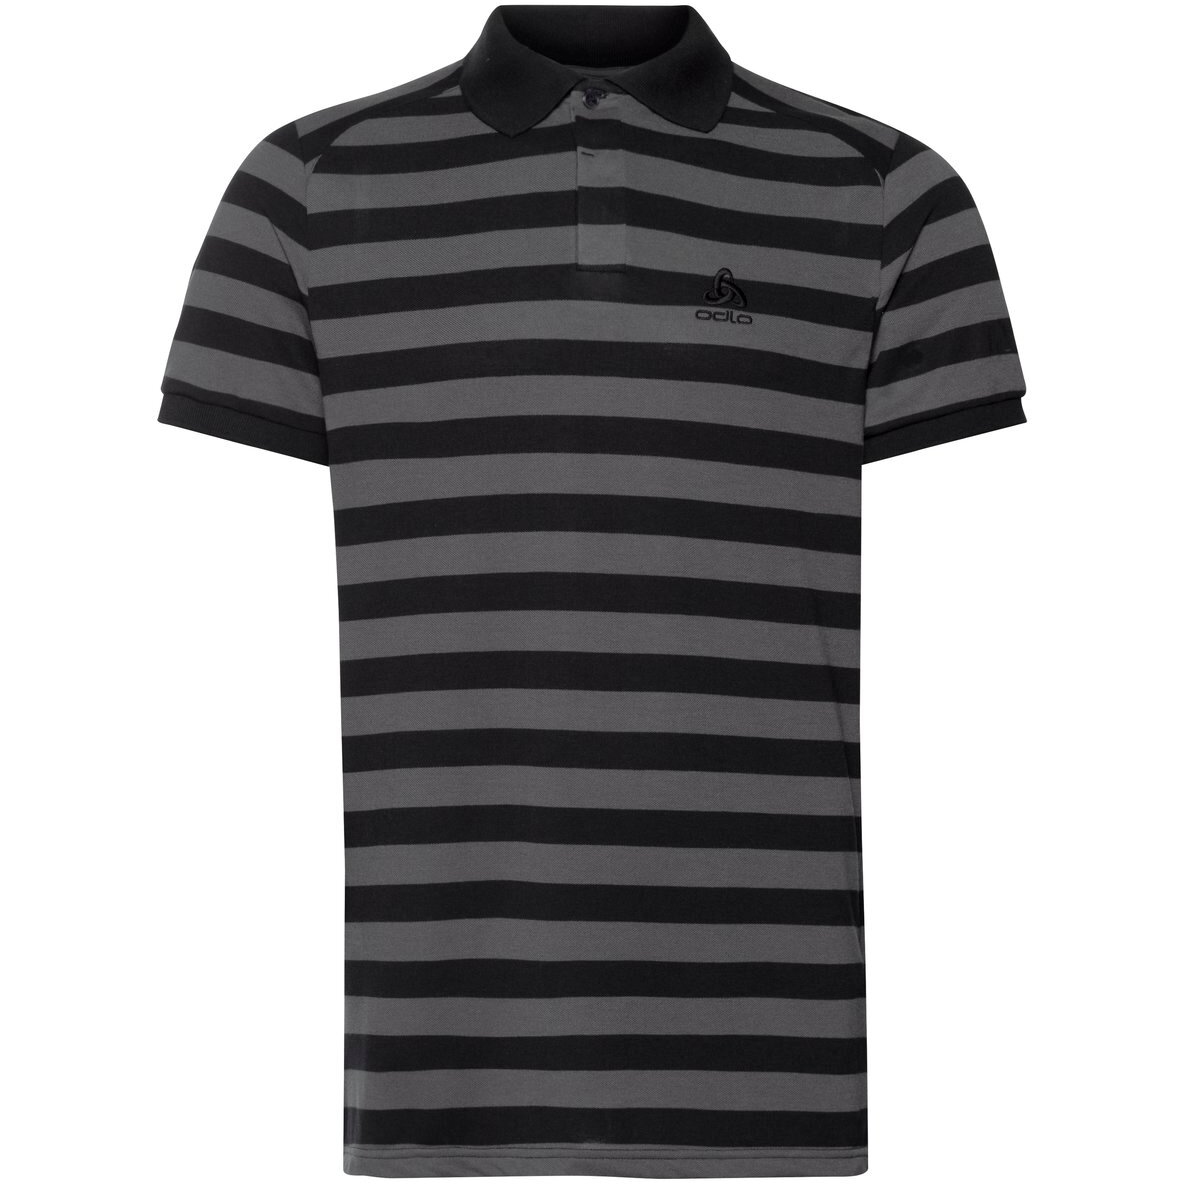 Foto de Odlo Polo Camiseta Hombre - Concord - negro - new odlo graphite grey